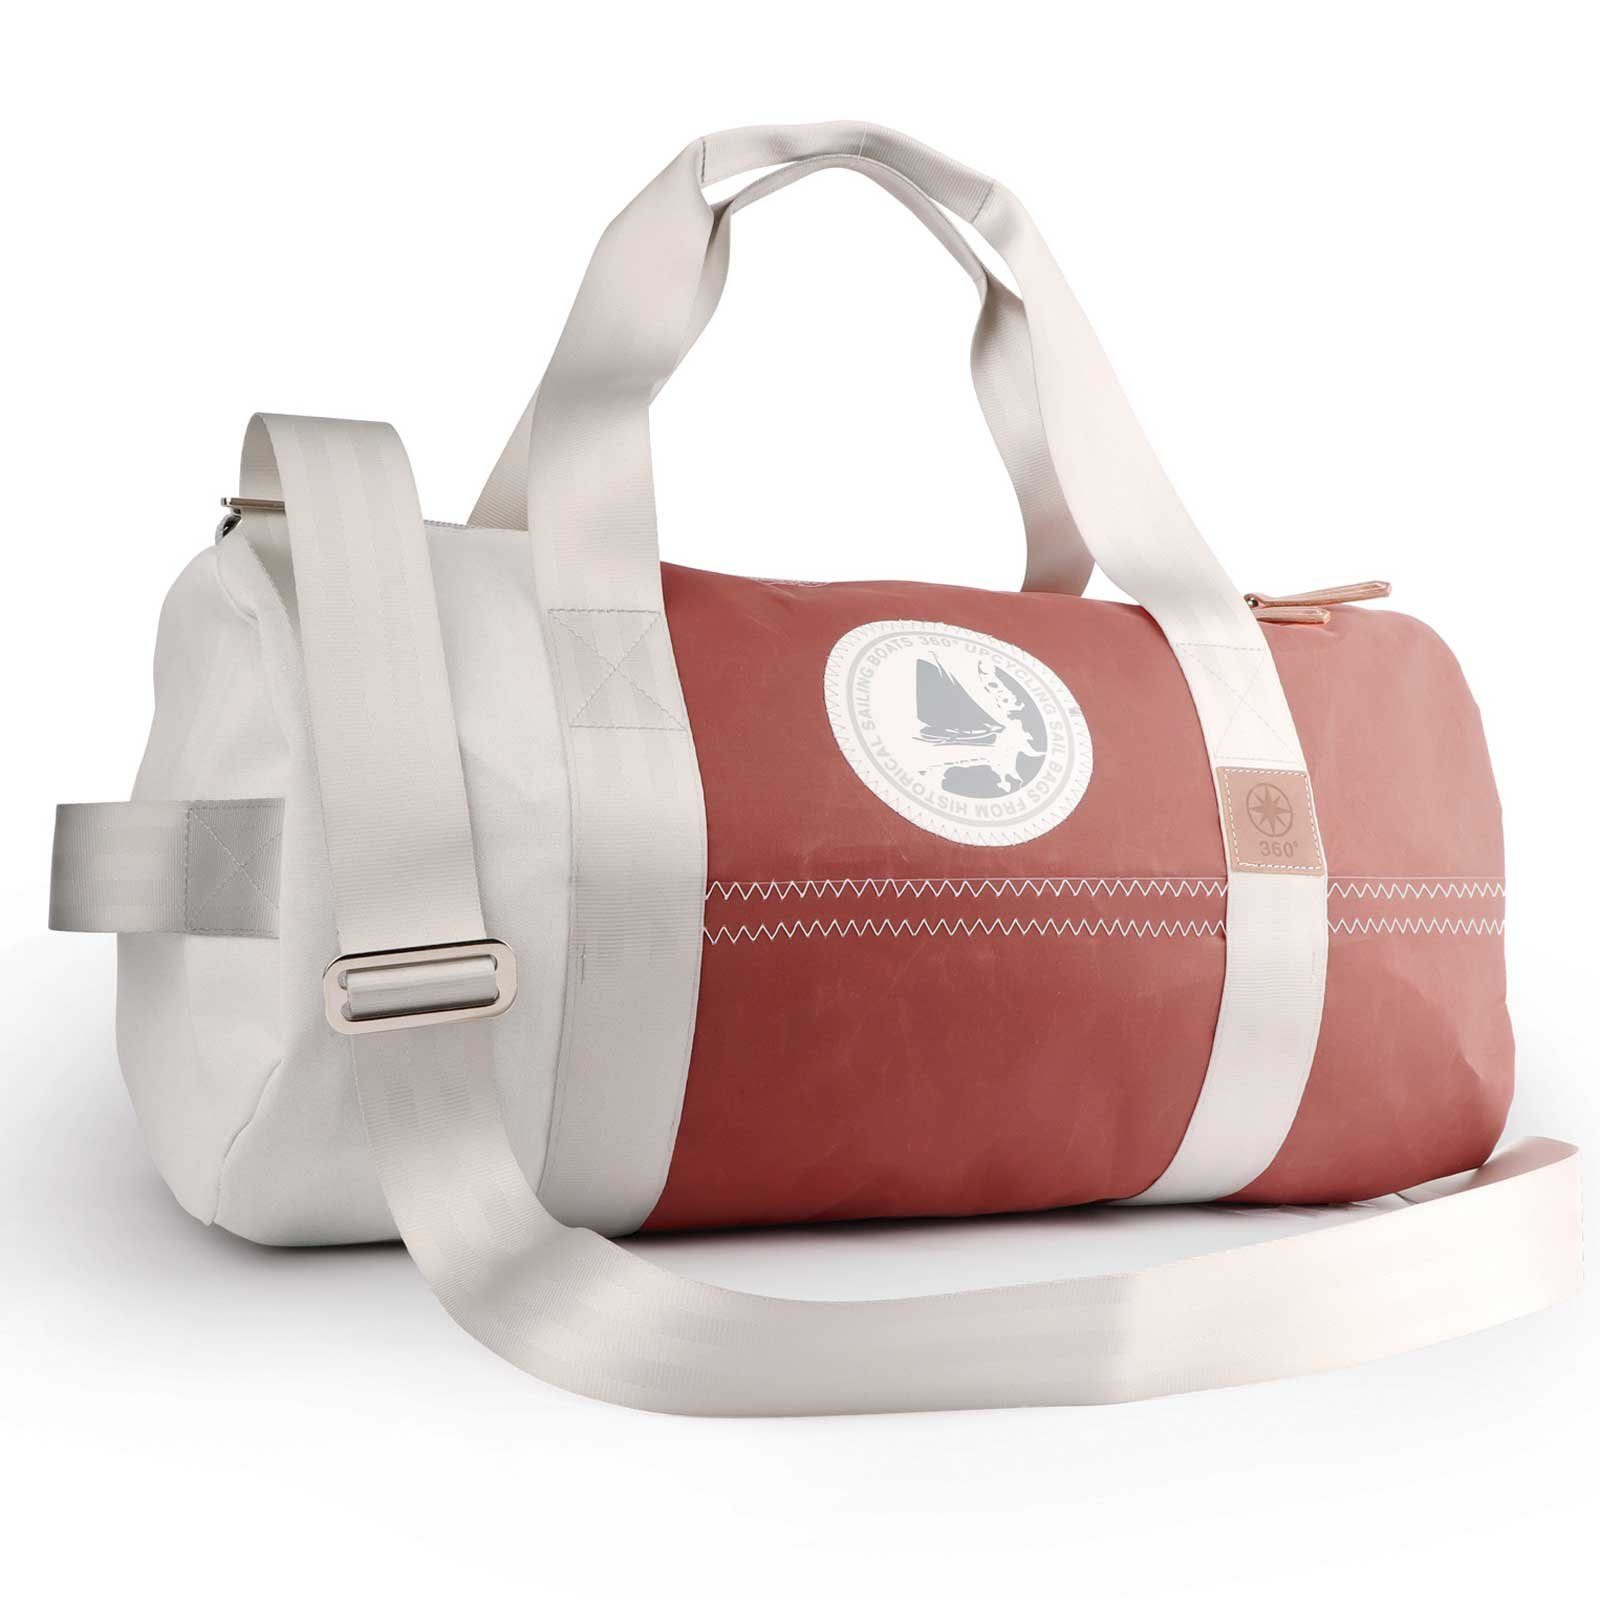 360Grad Reisetasche Pirat Umhänge-Tasche Segeltuch weiß-braun